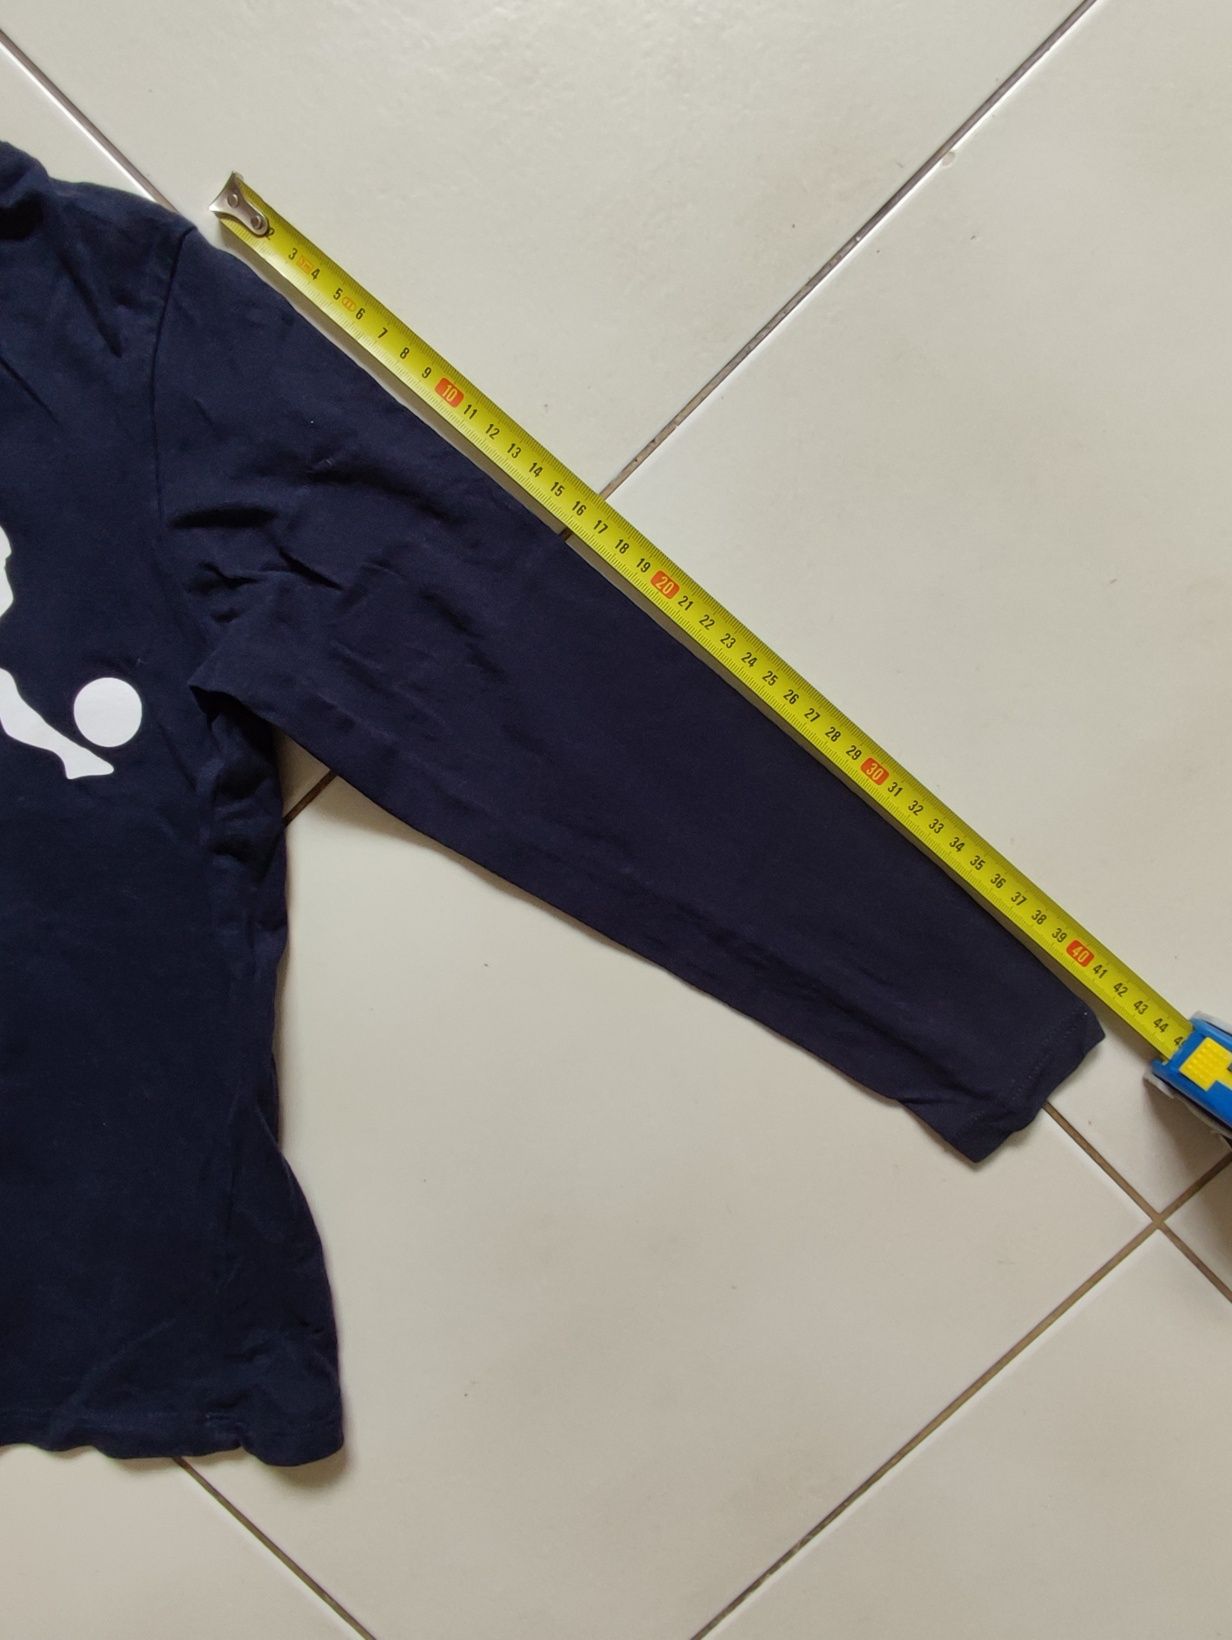 Bluza, t-shirt, bluzka chłopięca firmy Pepco rozmiar 122/128